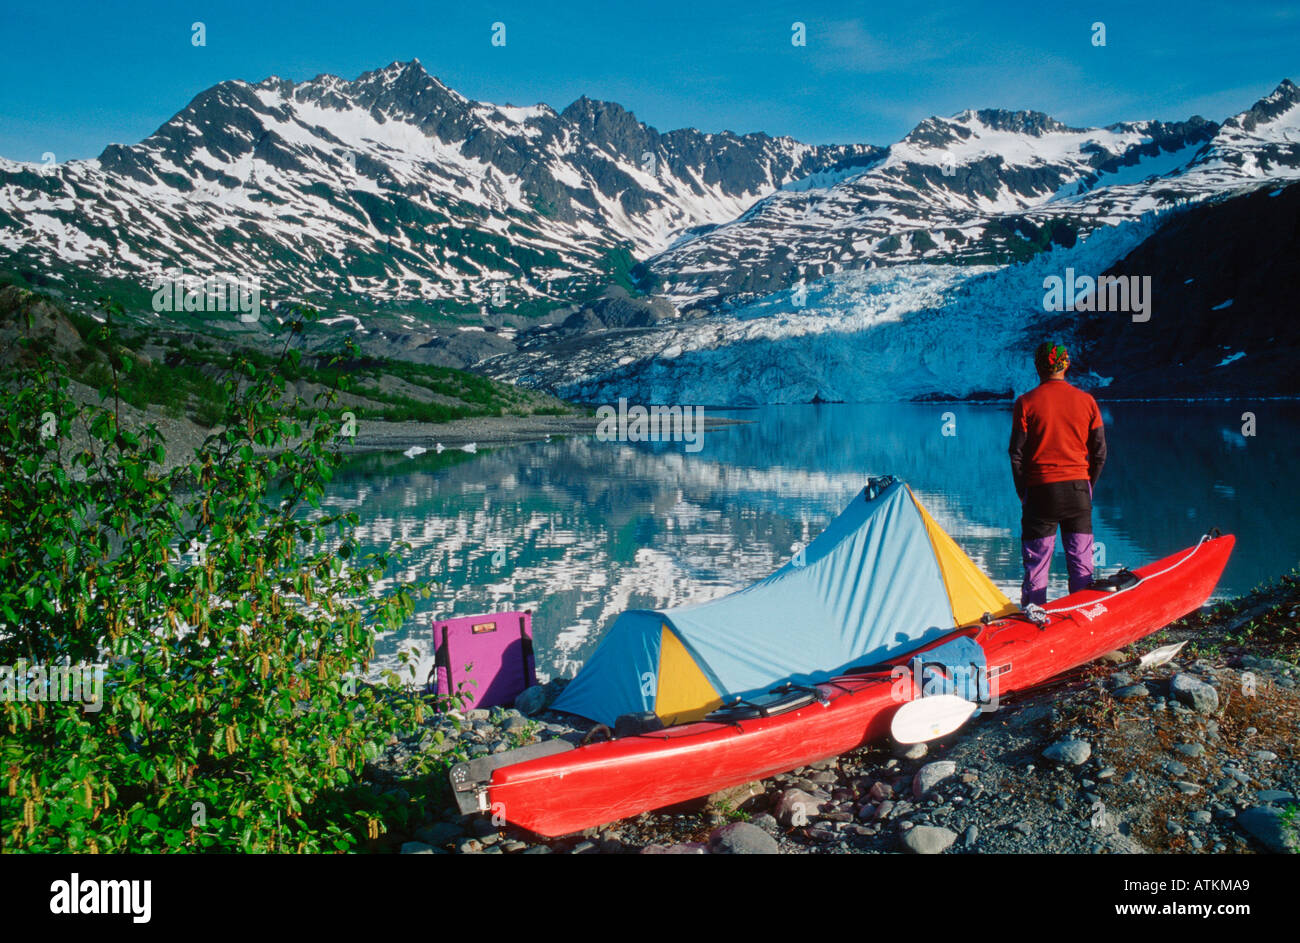 Camping in der Nähe von Shoup Gletscher / Camping am Shoup-Gletscher Stockfoto